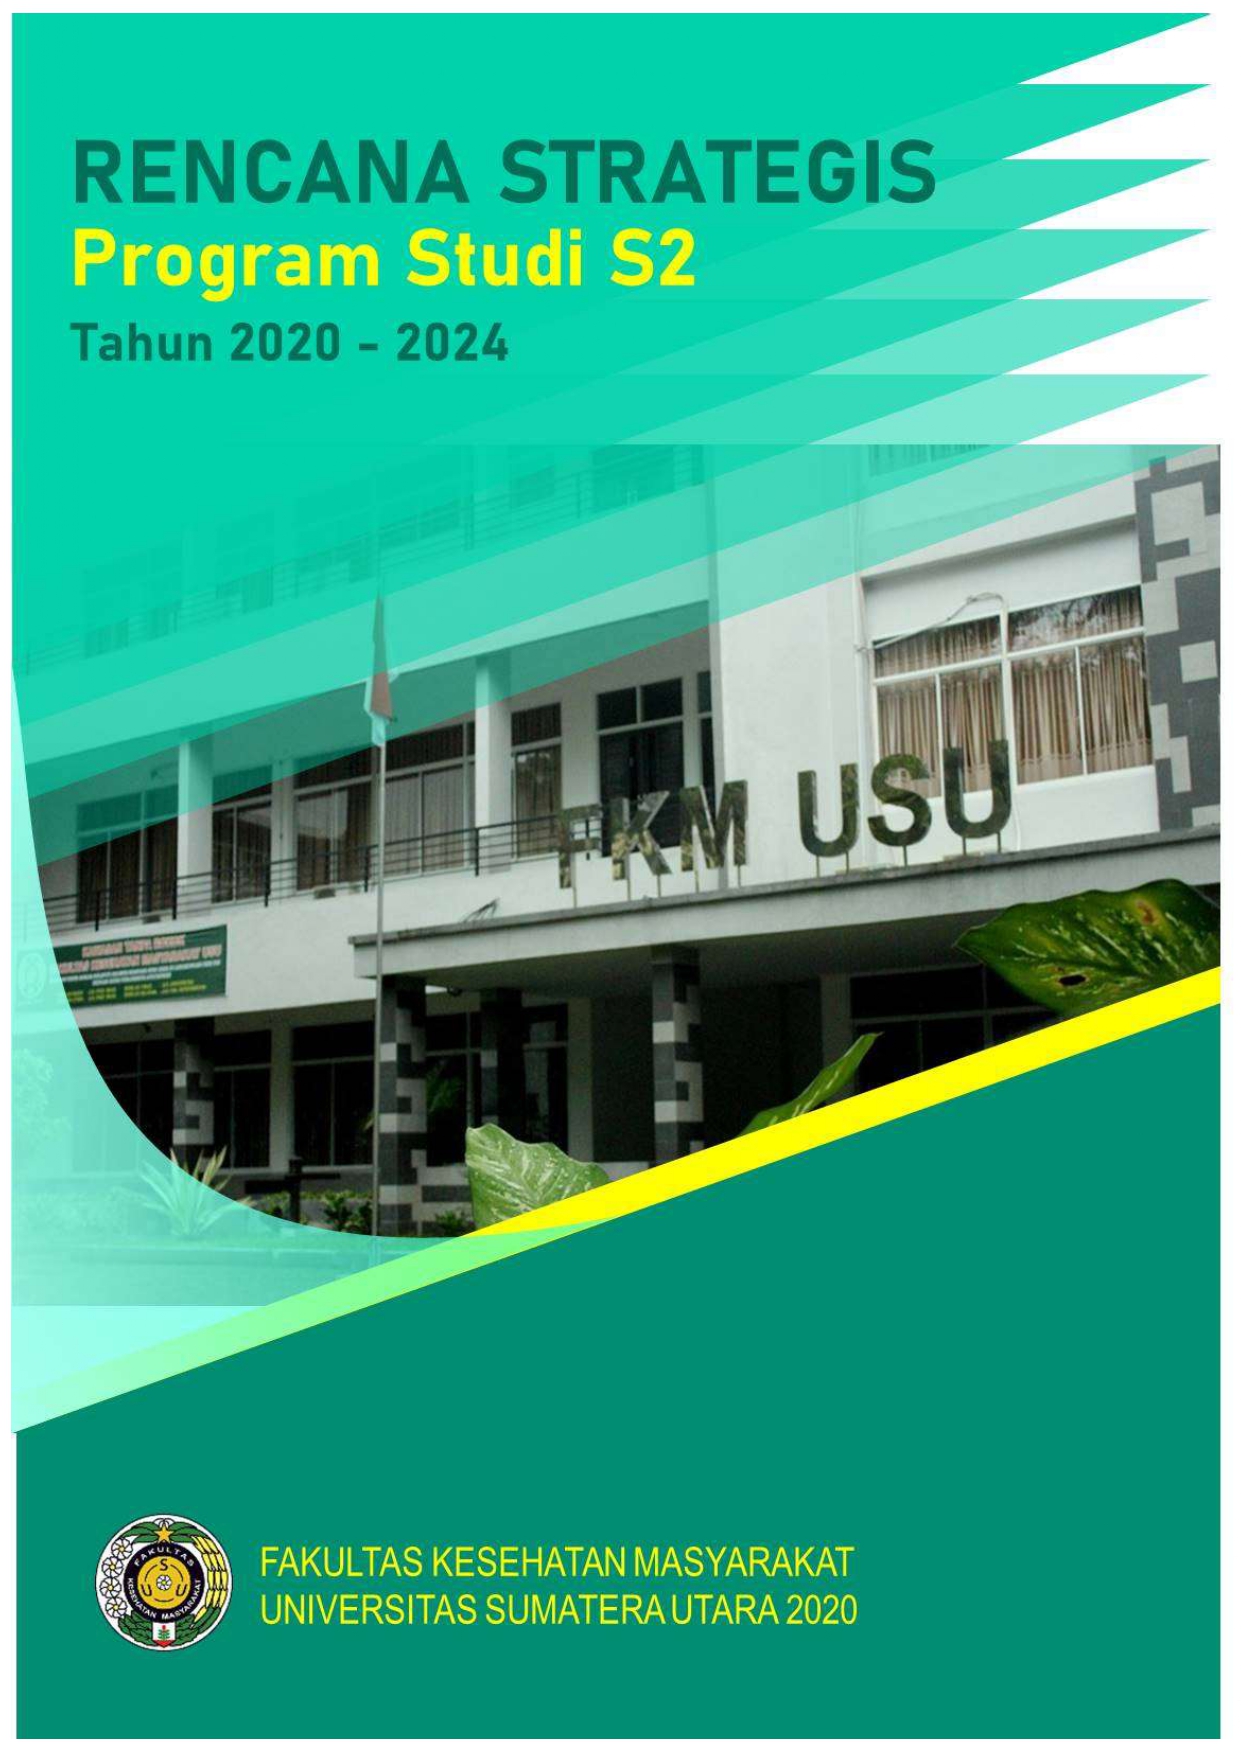 Renstra Program Studi S2 IKM FKM USU 1 page 0001